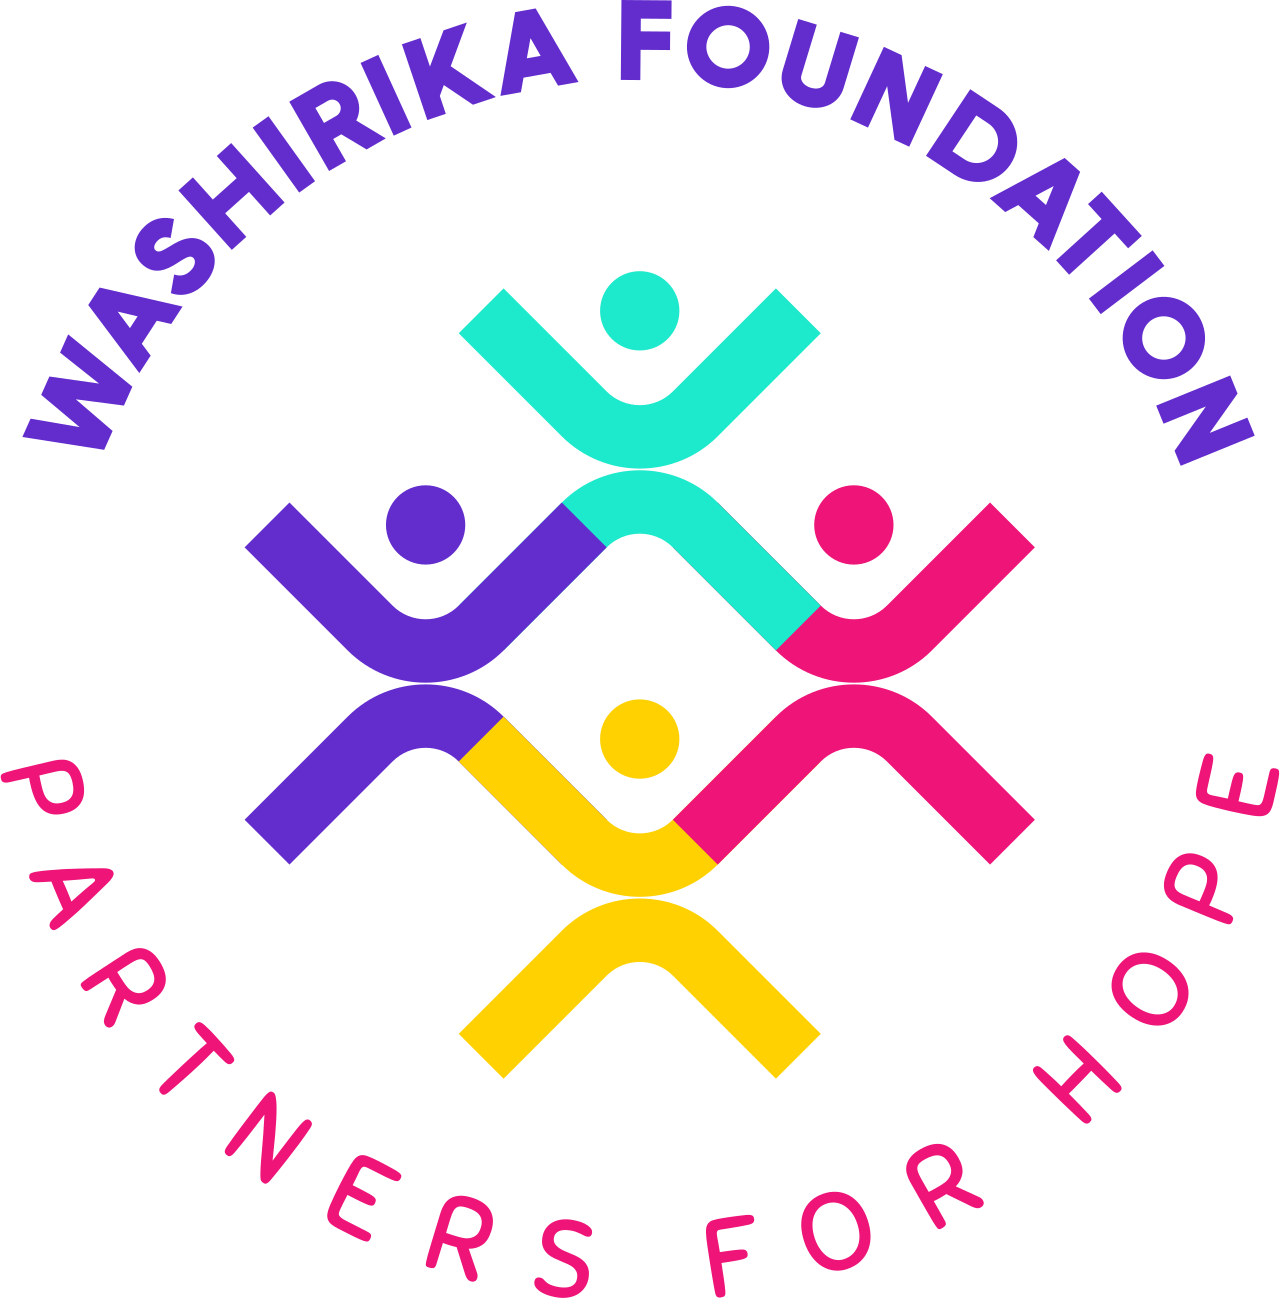 WASHIRIKA FOUNDATION's logo